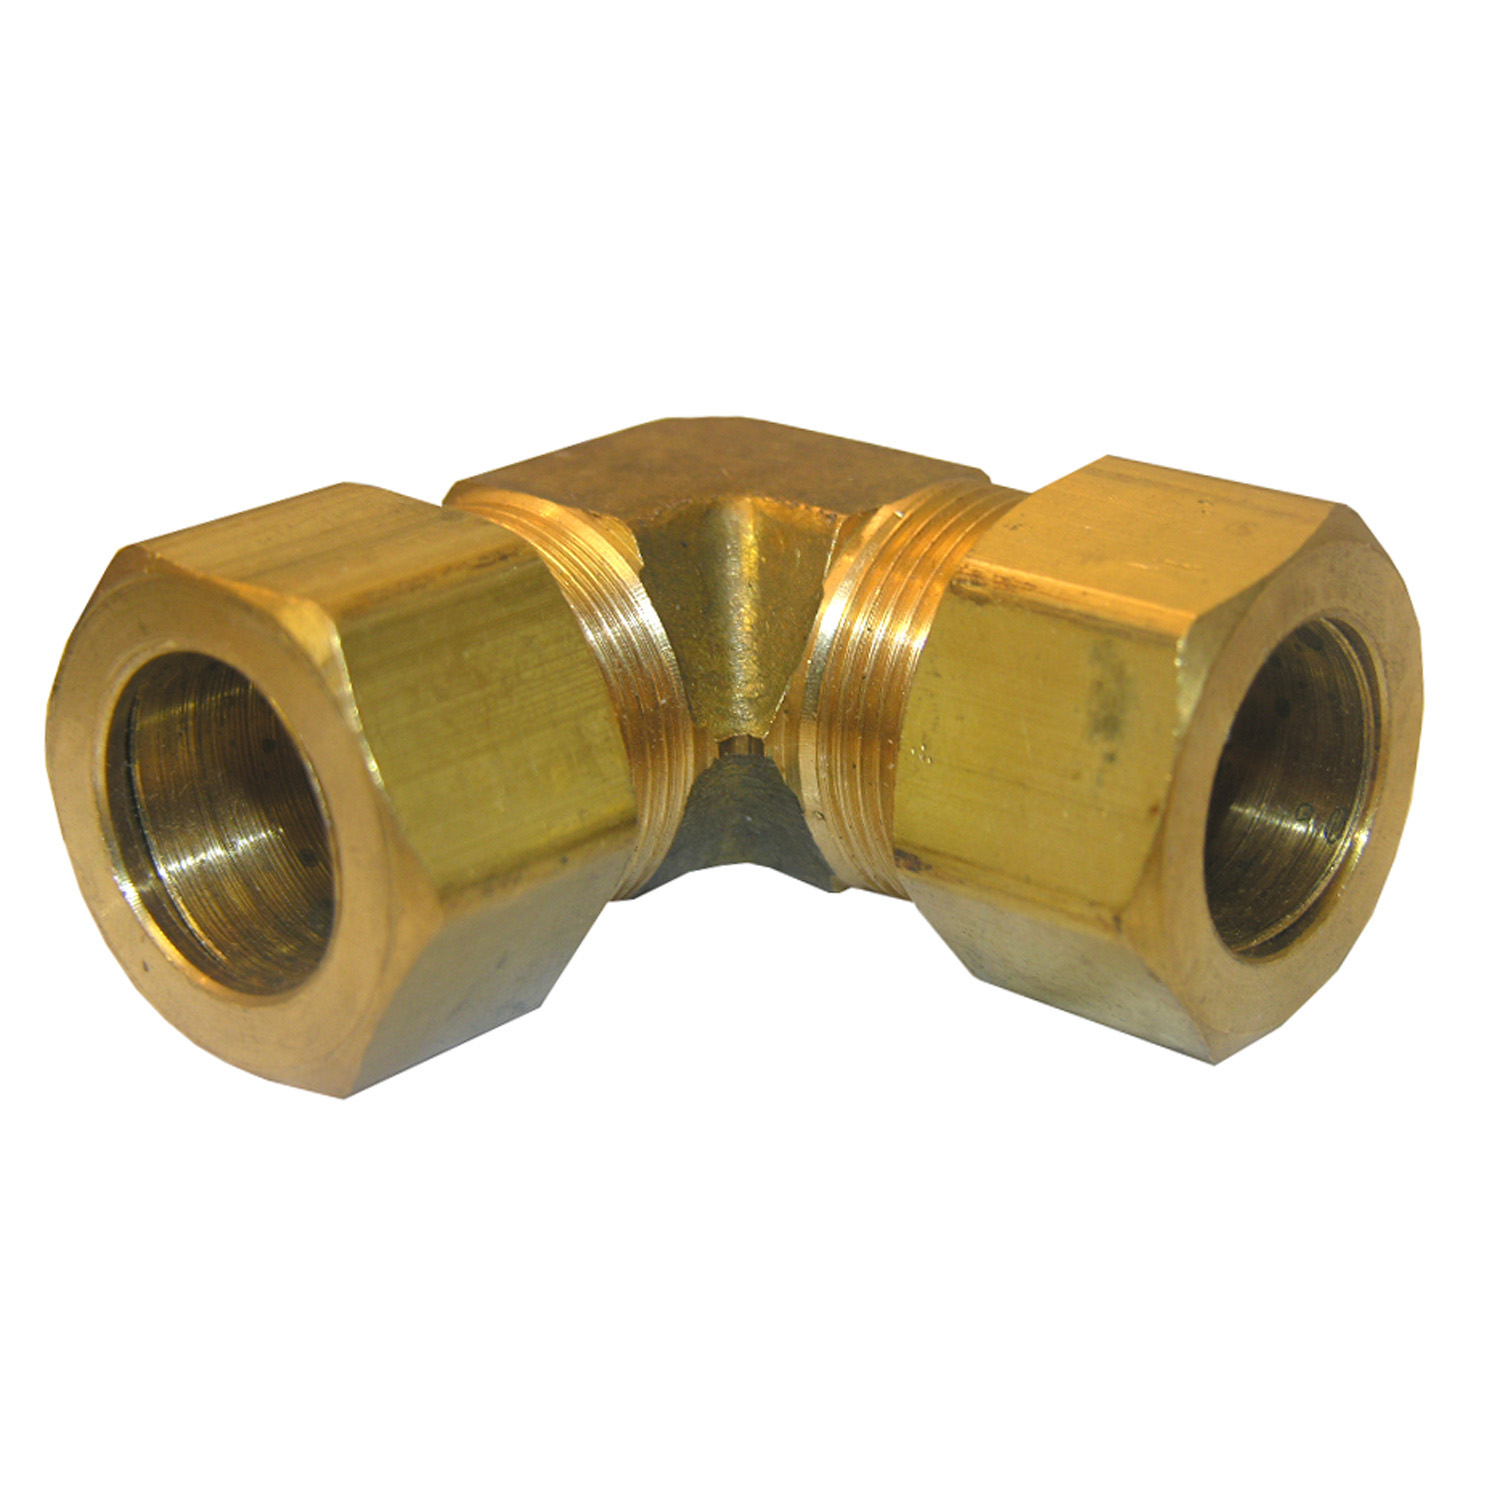 17-6557 Pipe Elbow, 5/8 in, Compression, 90 deg Angle, Brass, 200 psi Pressure